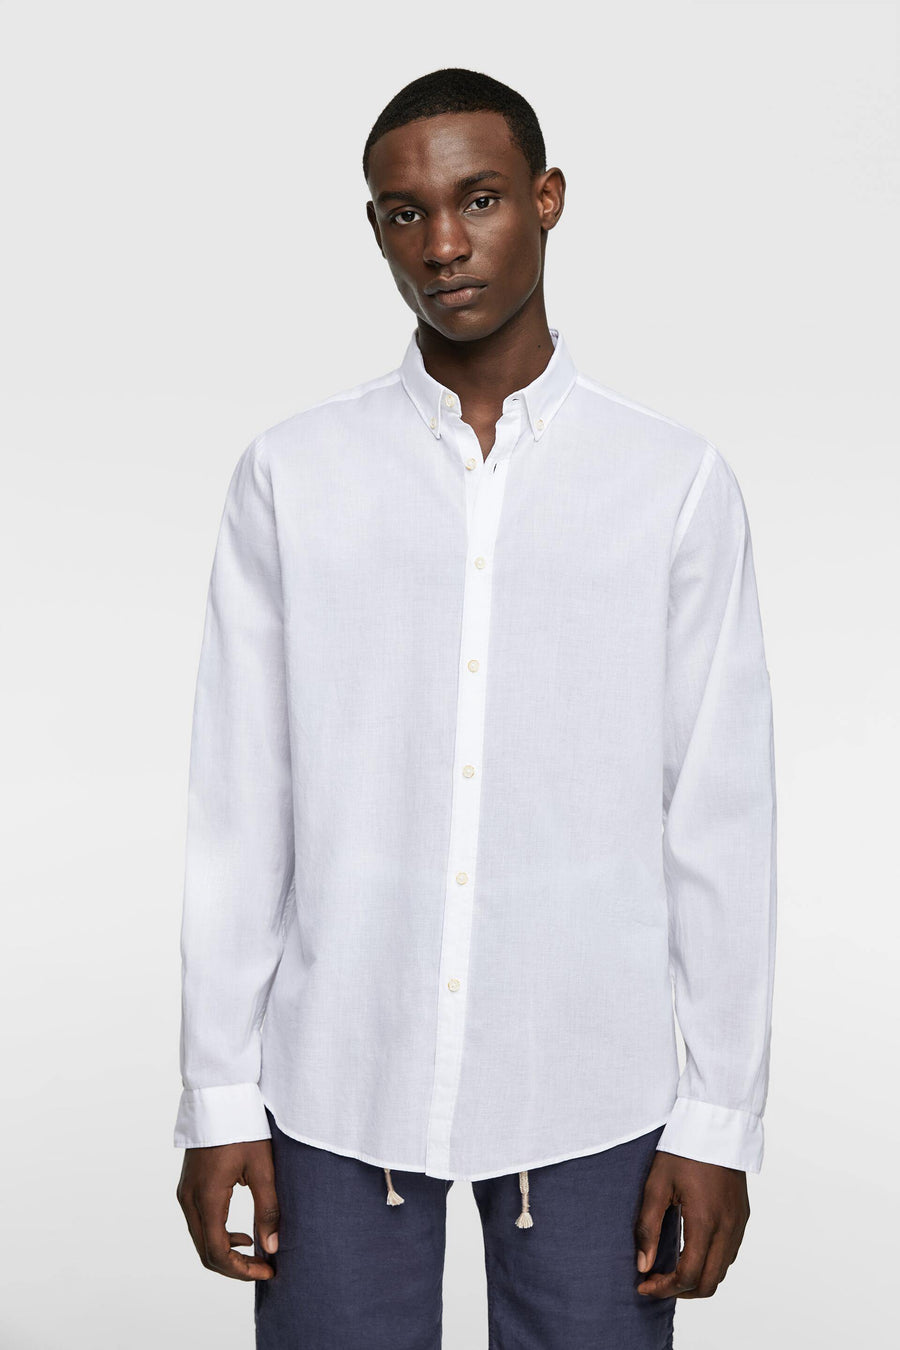 ZaraMan Plain F/S Casual Shirt 6048/400/250